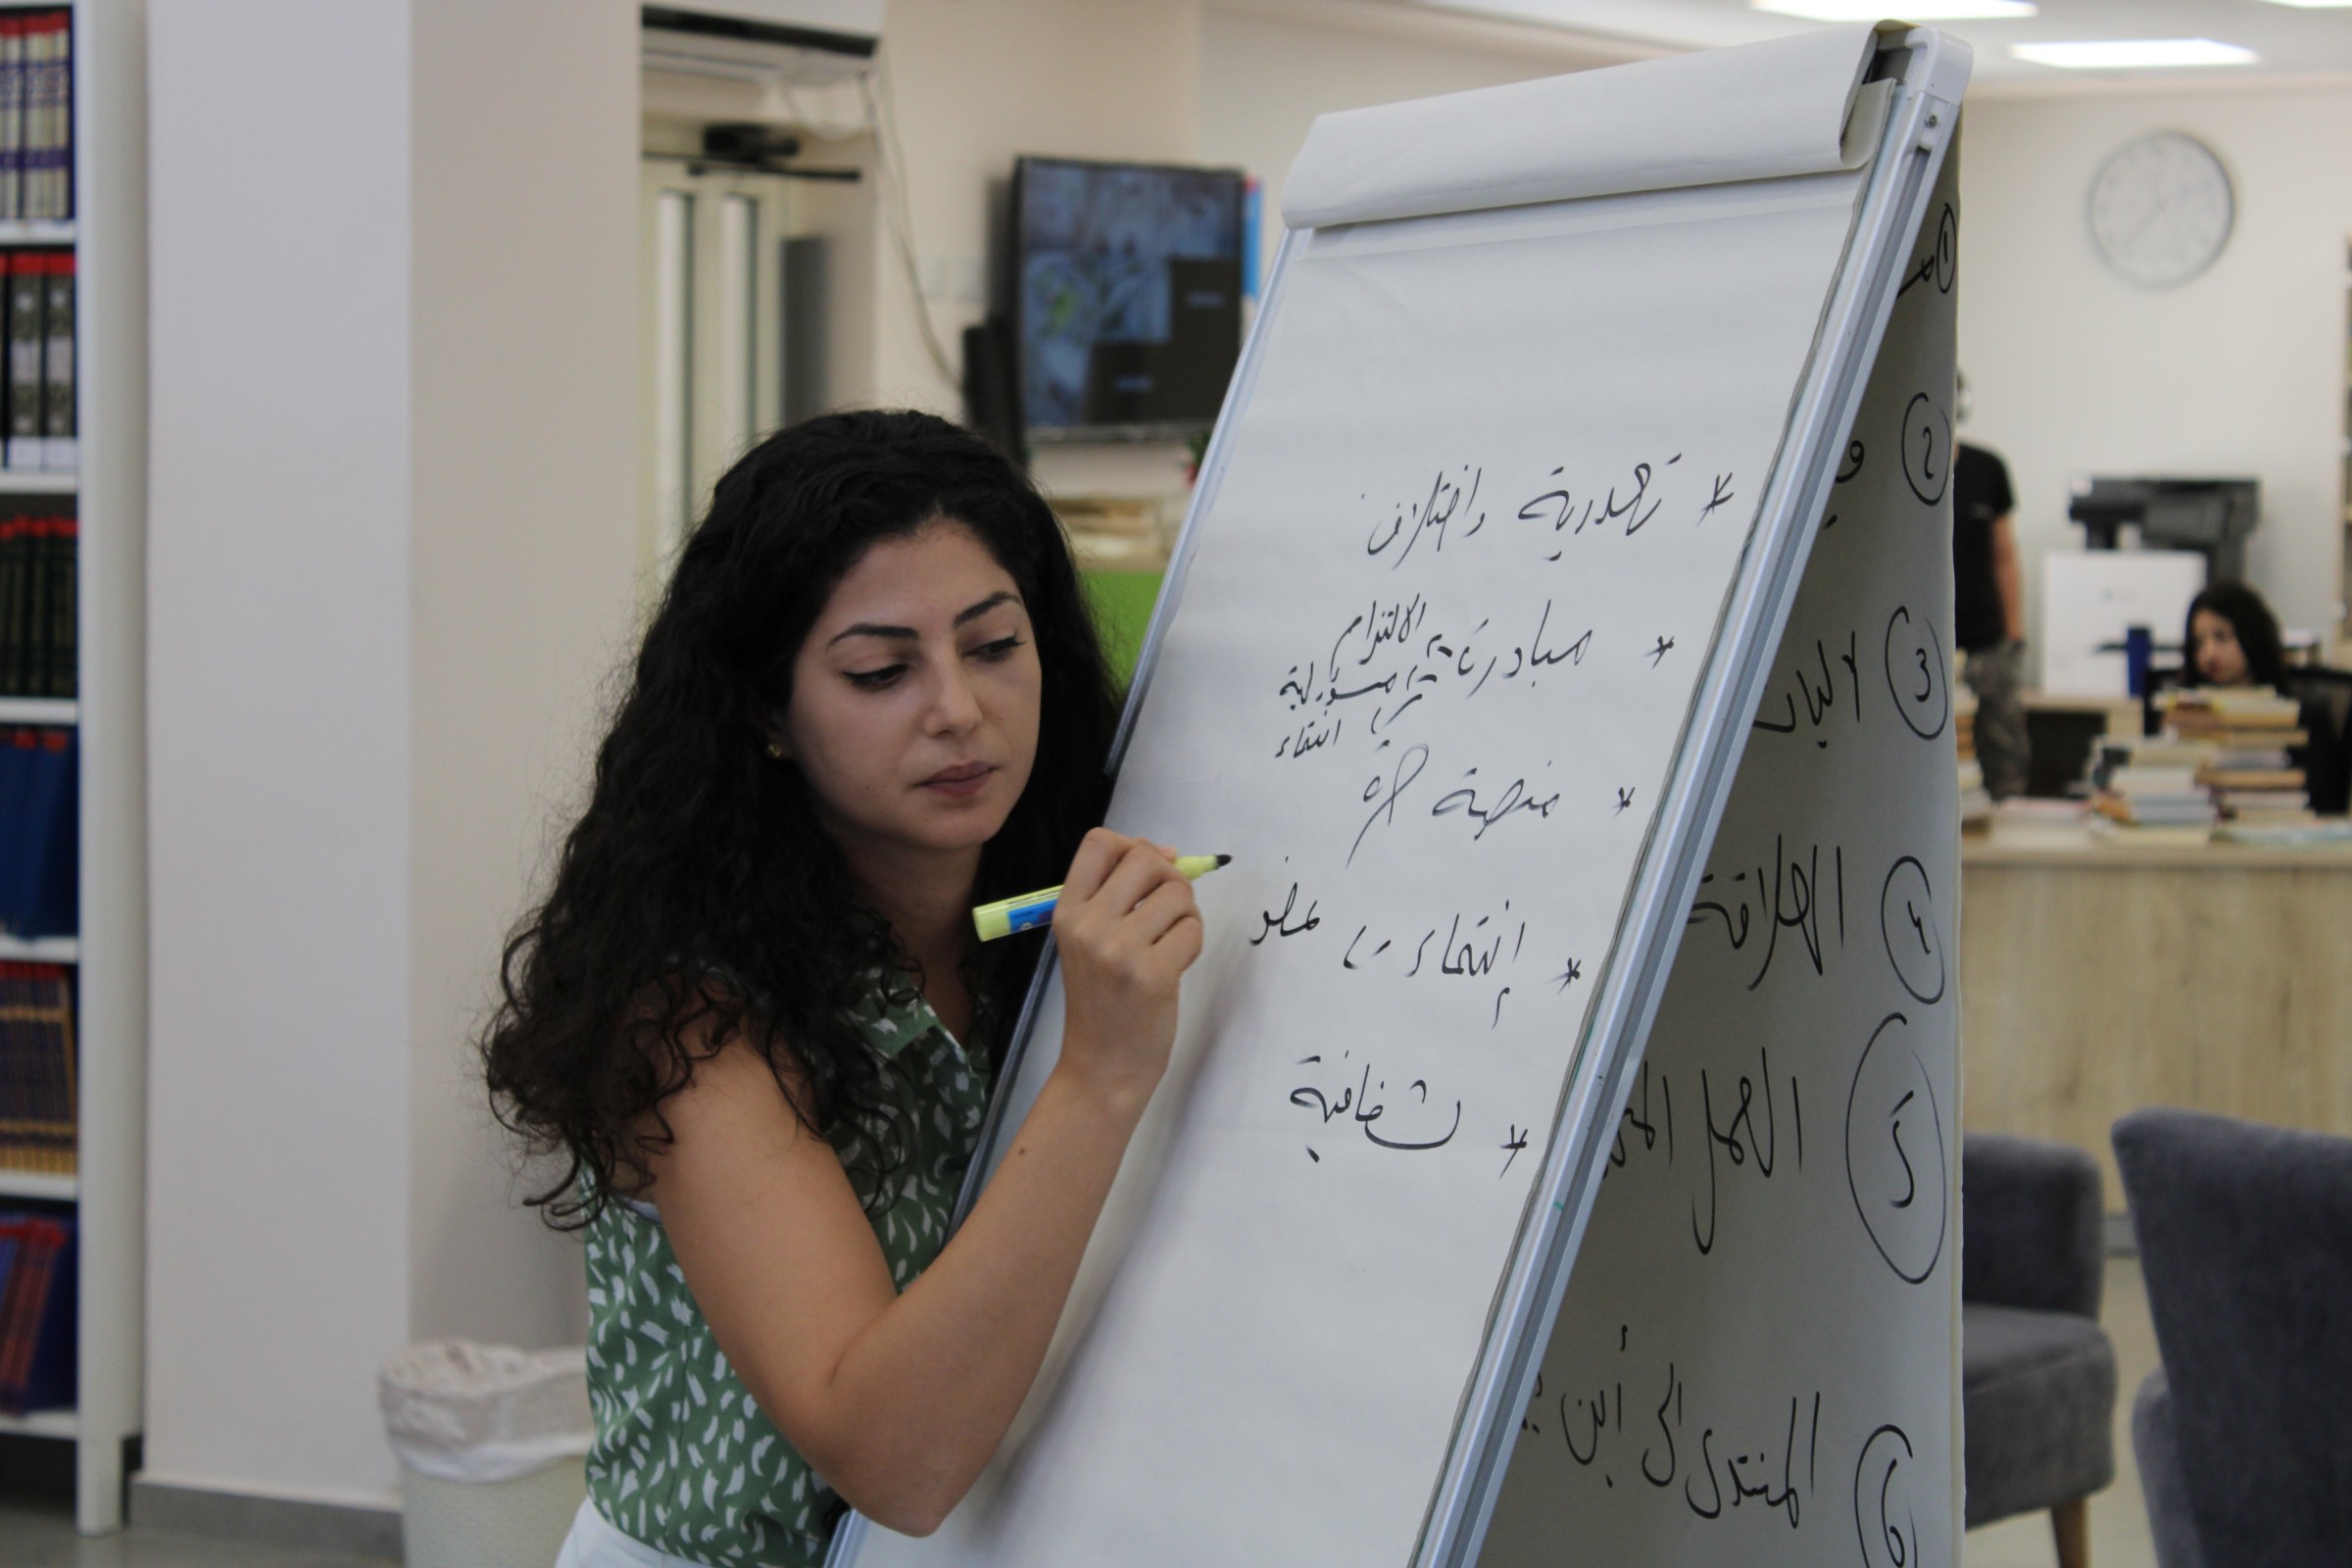 Palästinenserin in Israel schreibt auf ein Flipchart Board in arabischer Schrift